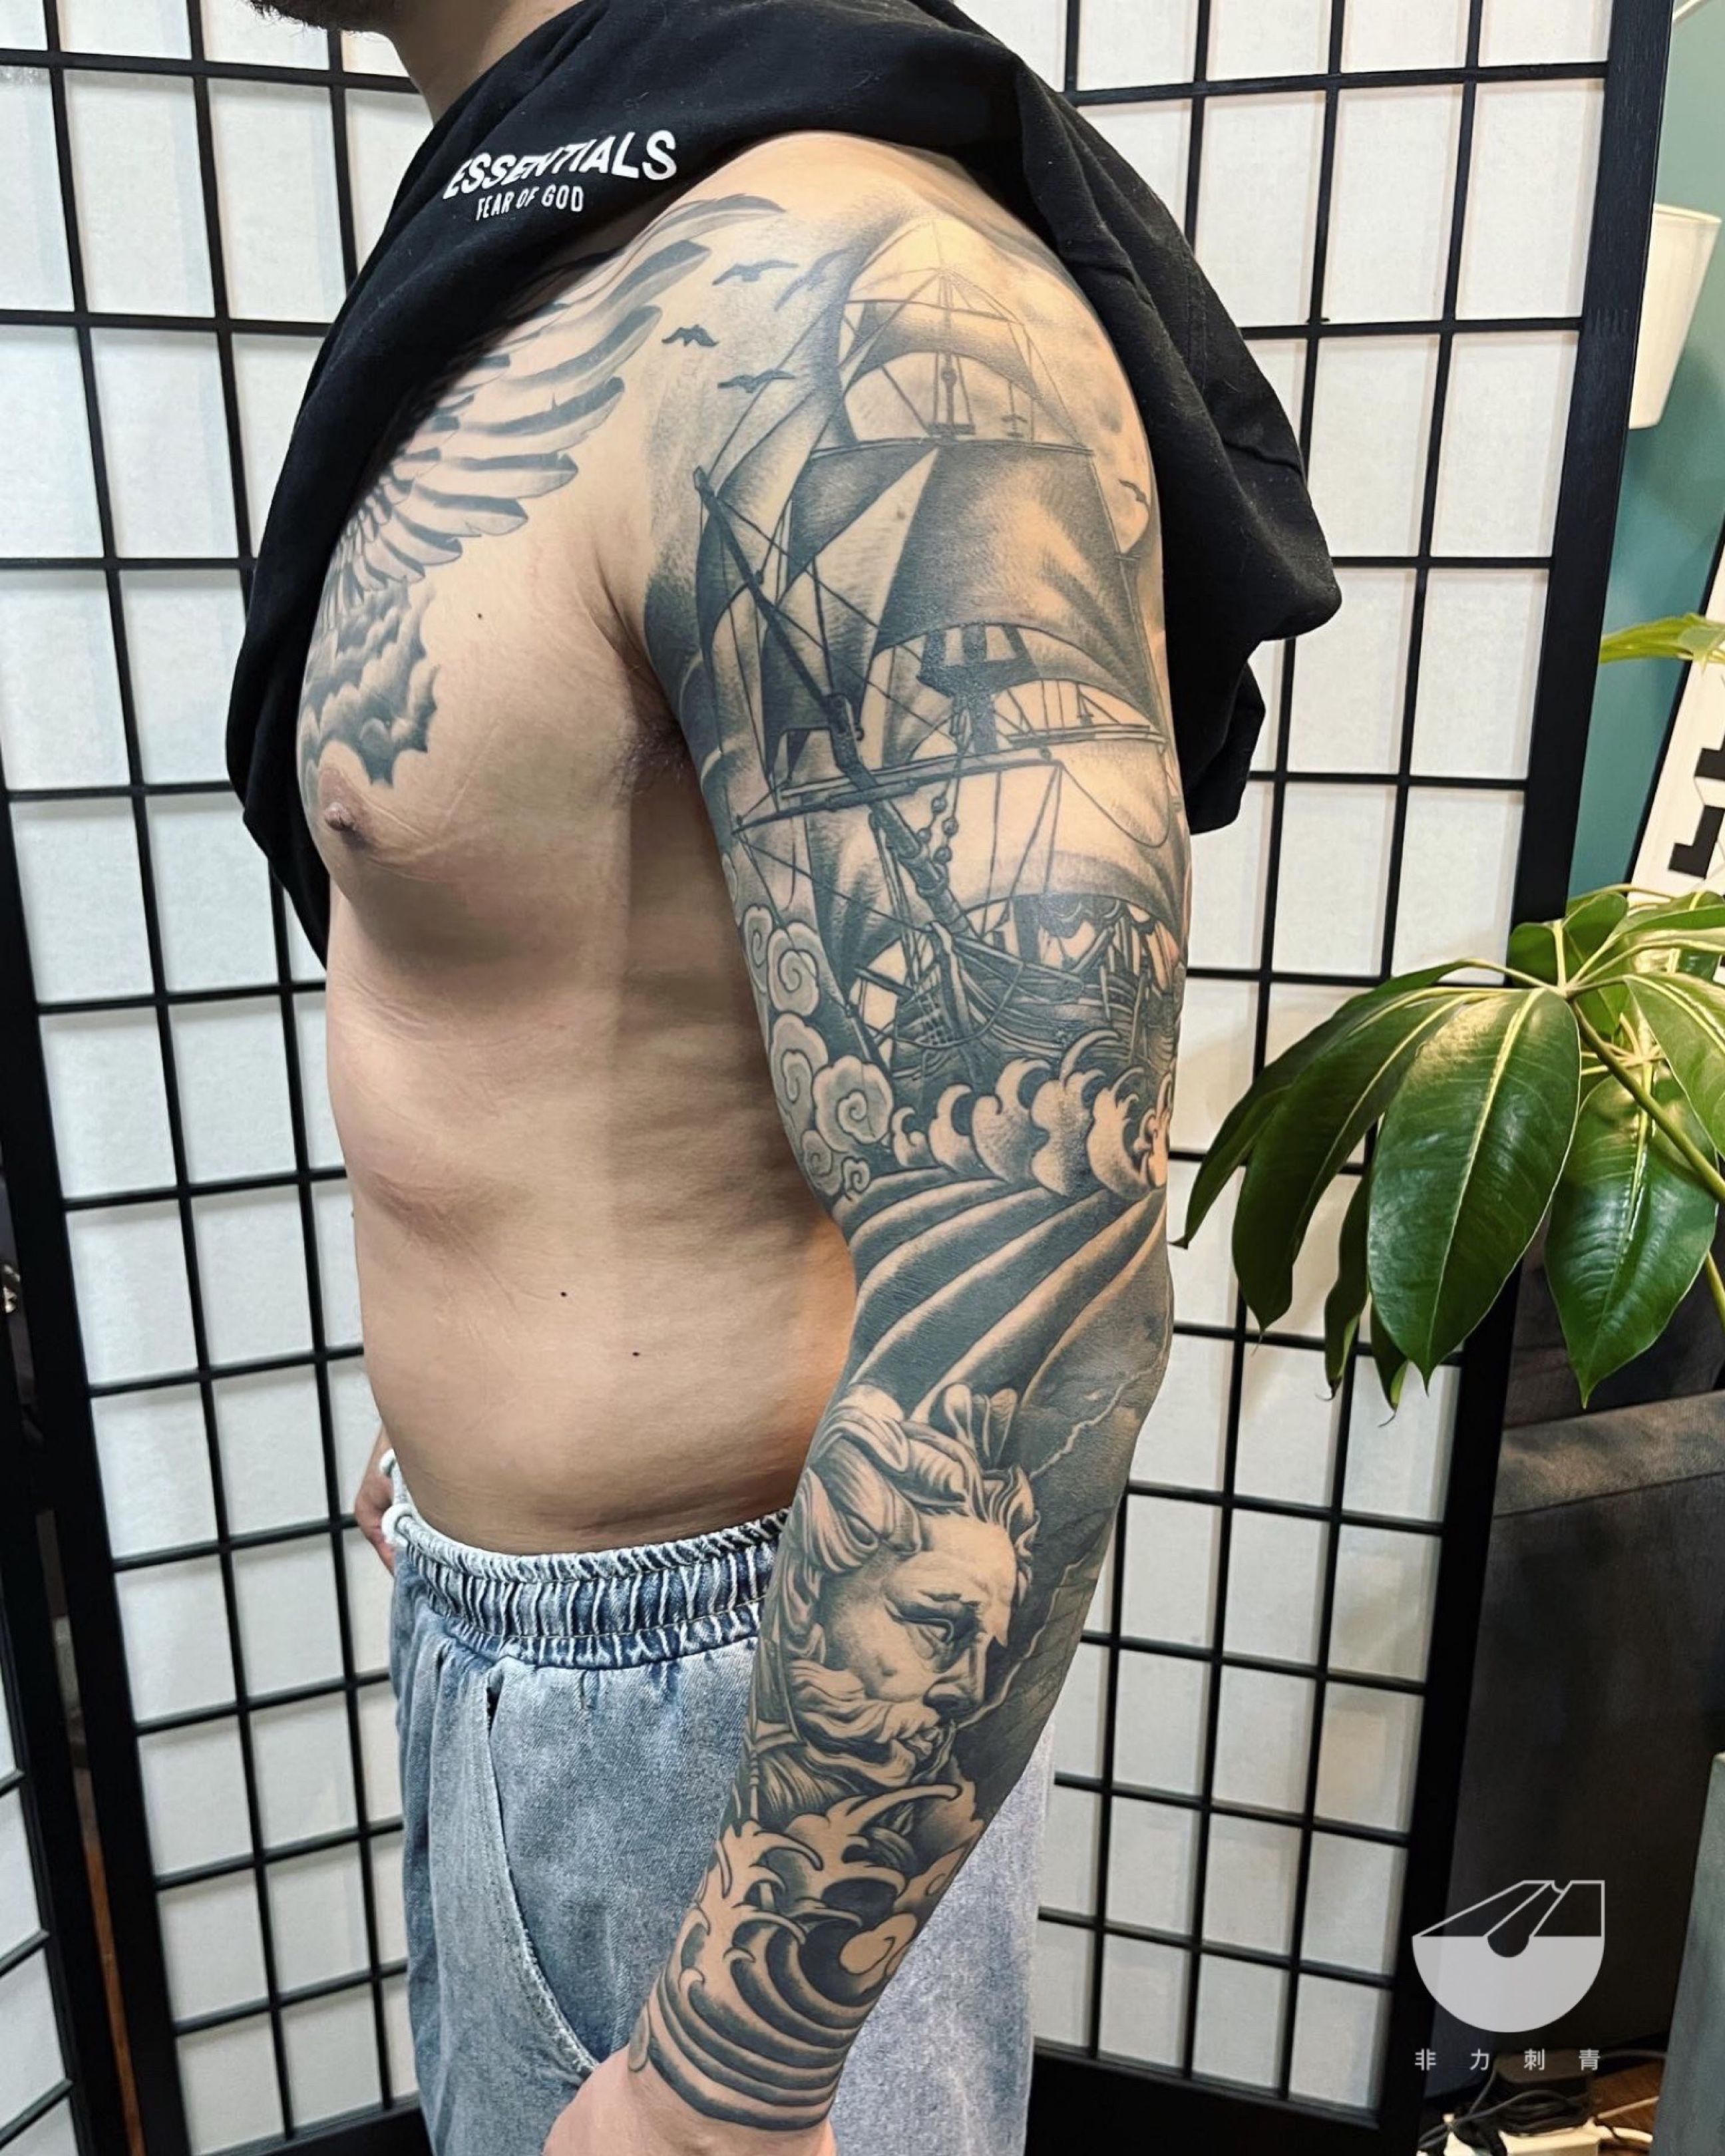 Create a tattoo sleeve by Sooxhog66